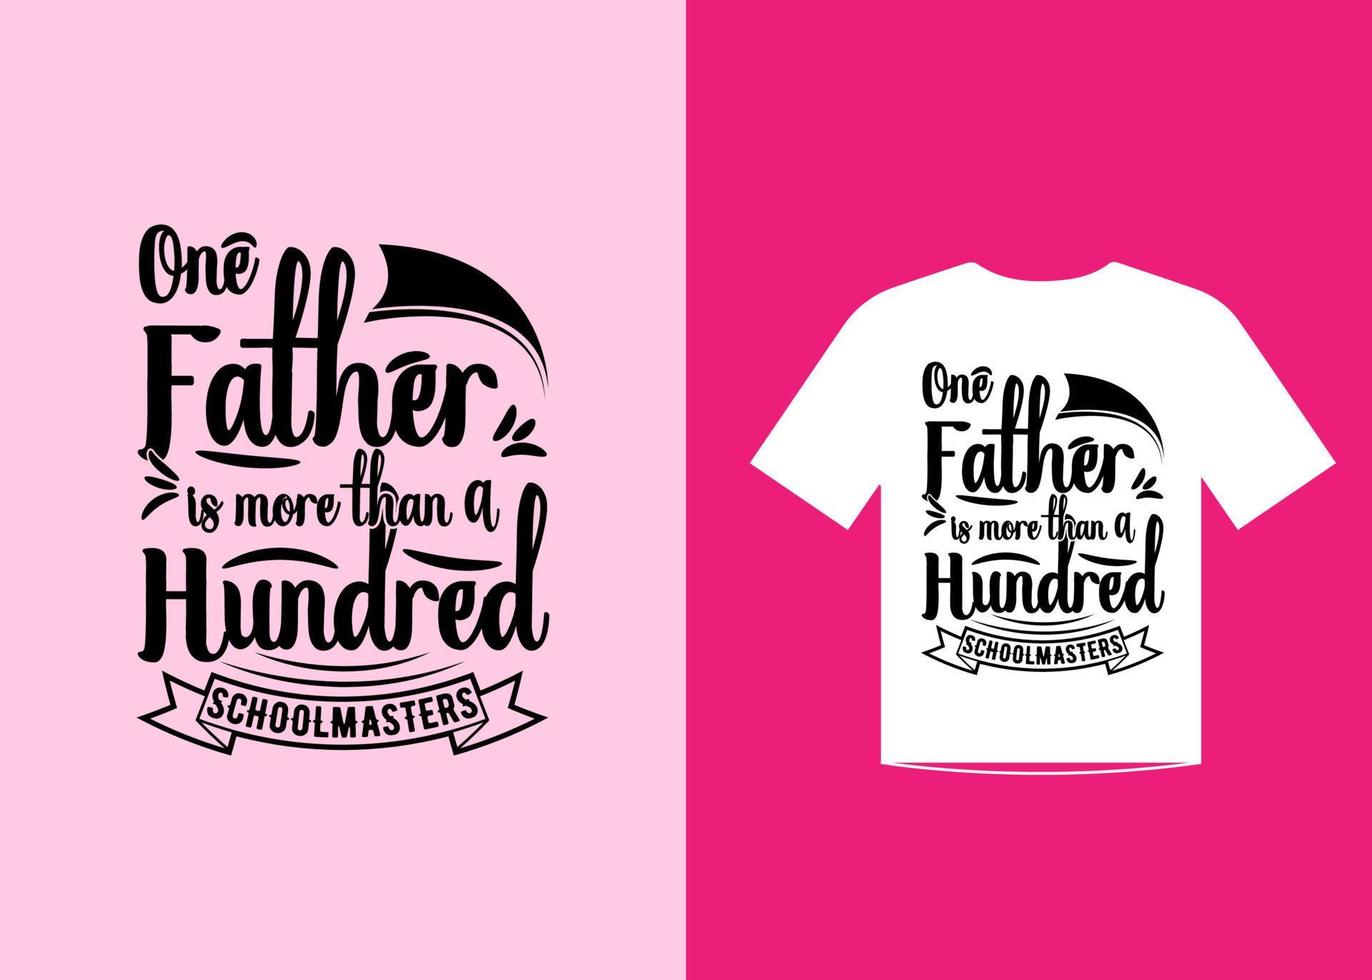 vecteur de conception de modèle de t-shirt de citations de fête des pères